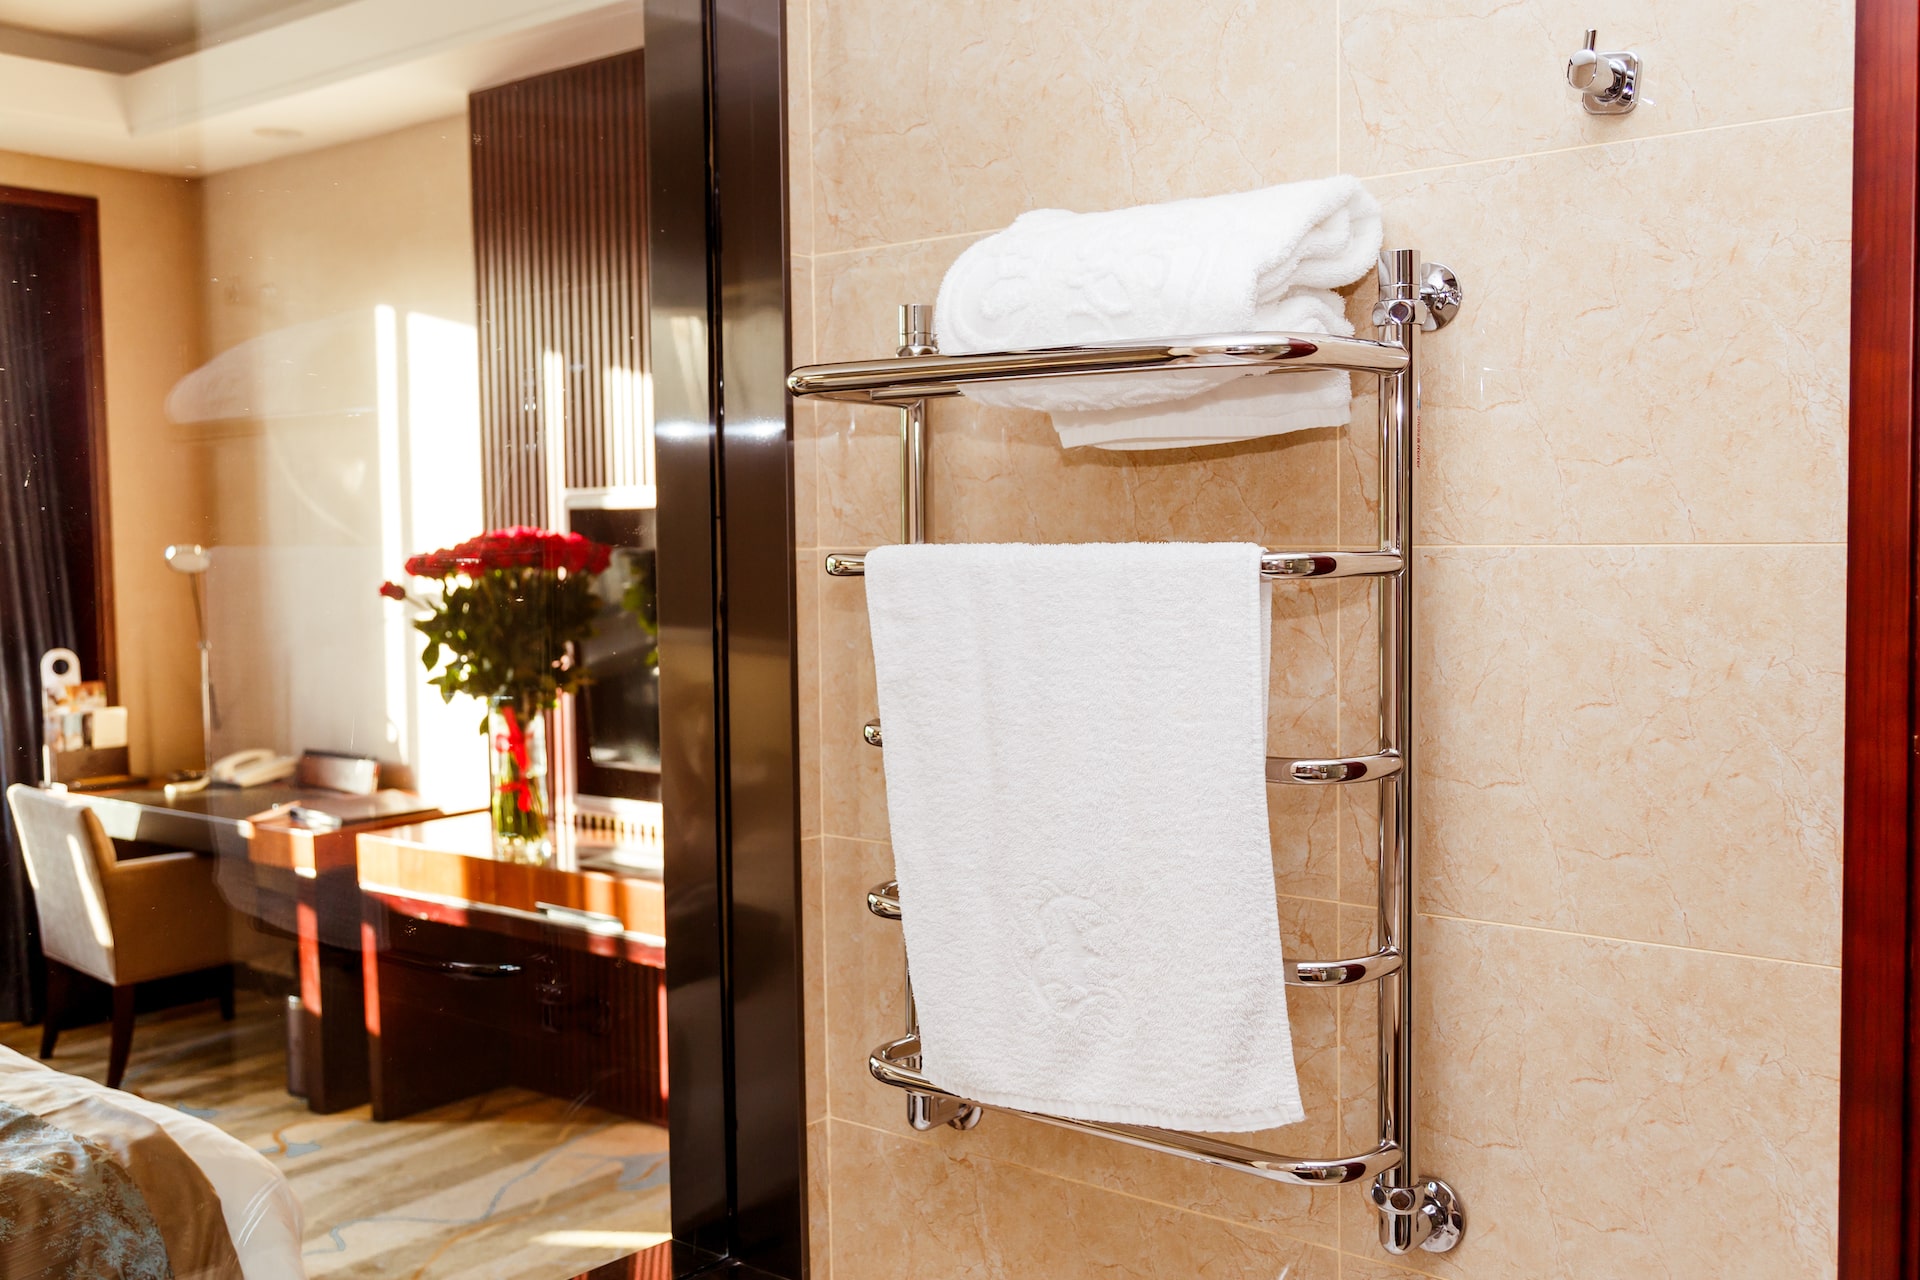 Accesorios de Baño toallero eléctrico Rack calentador de toallas calentador  de toallas - China Eléctrico calienta toallas, toallas